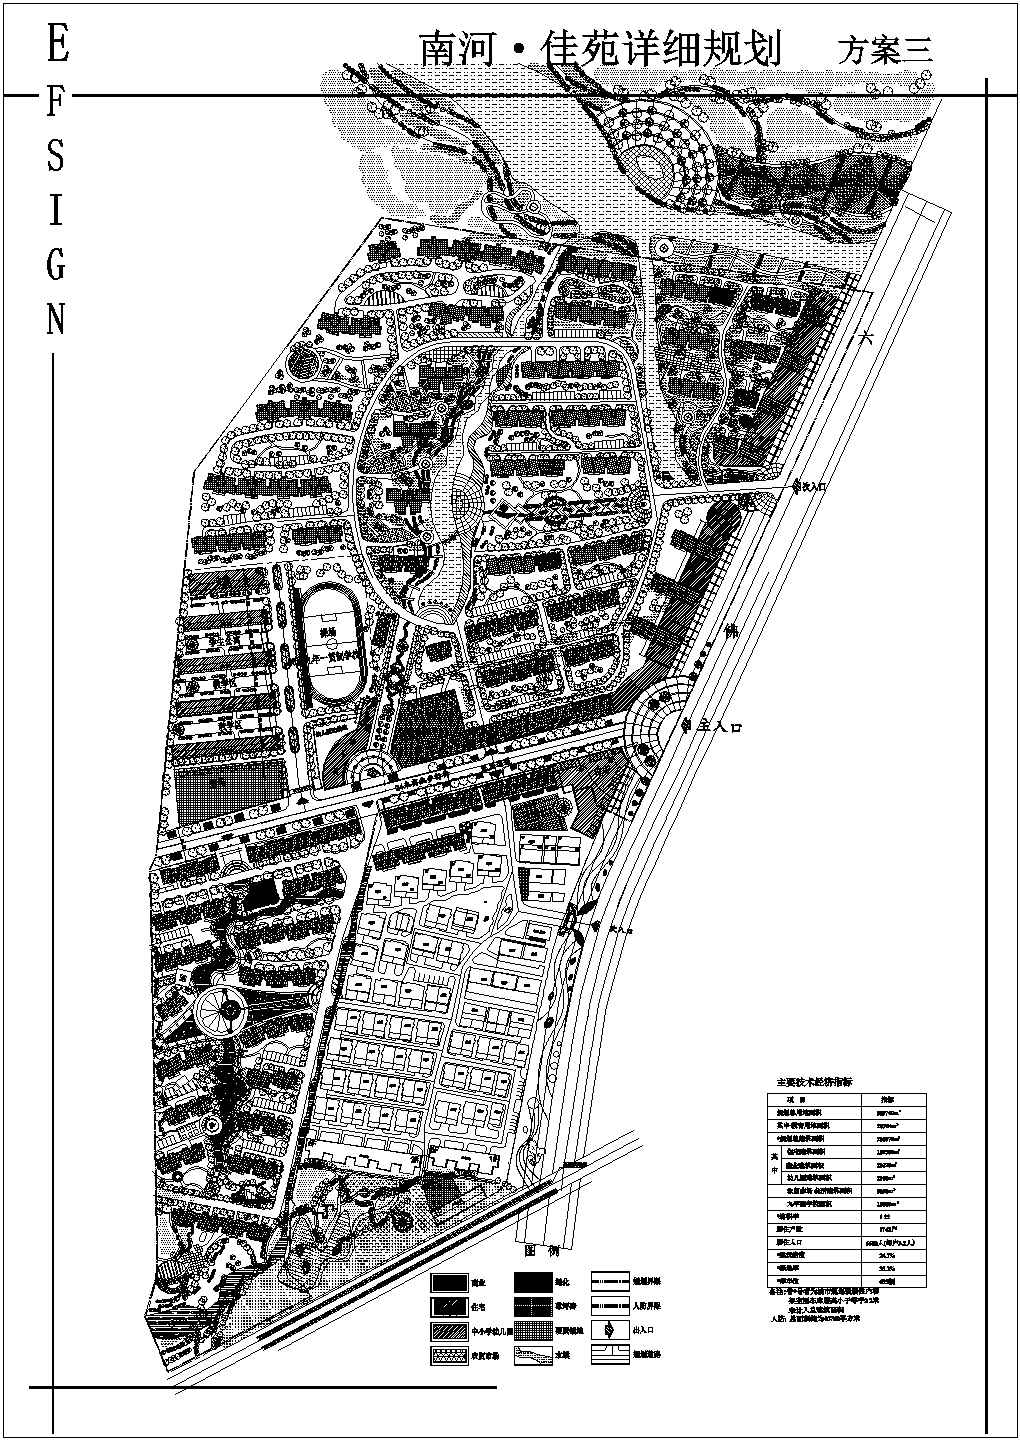 安徽某大型住宅小区总平面规划设计初步方案图